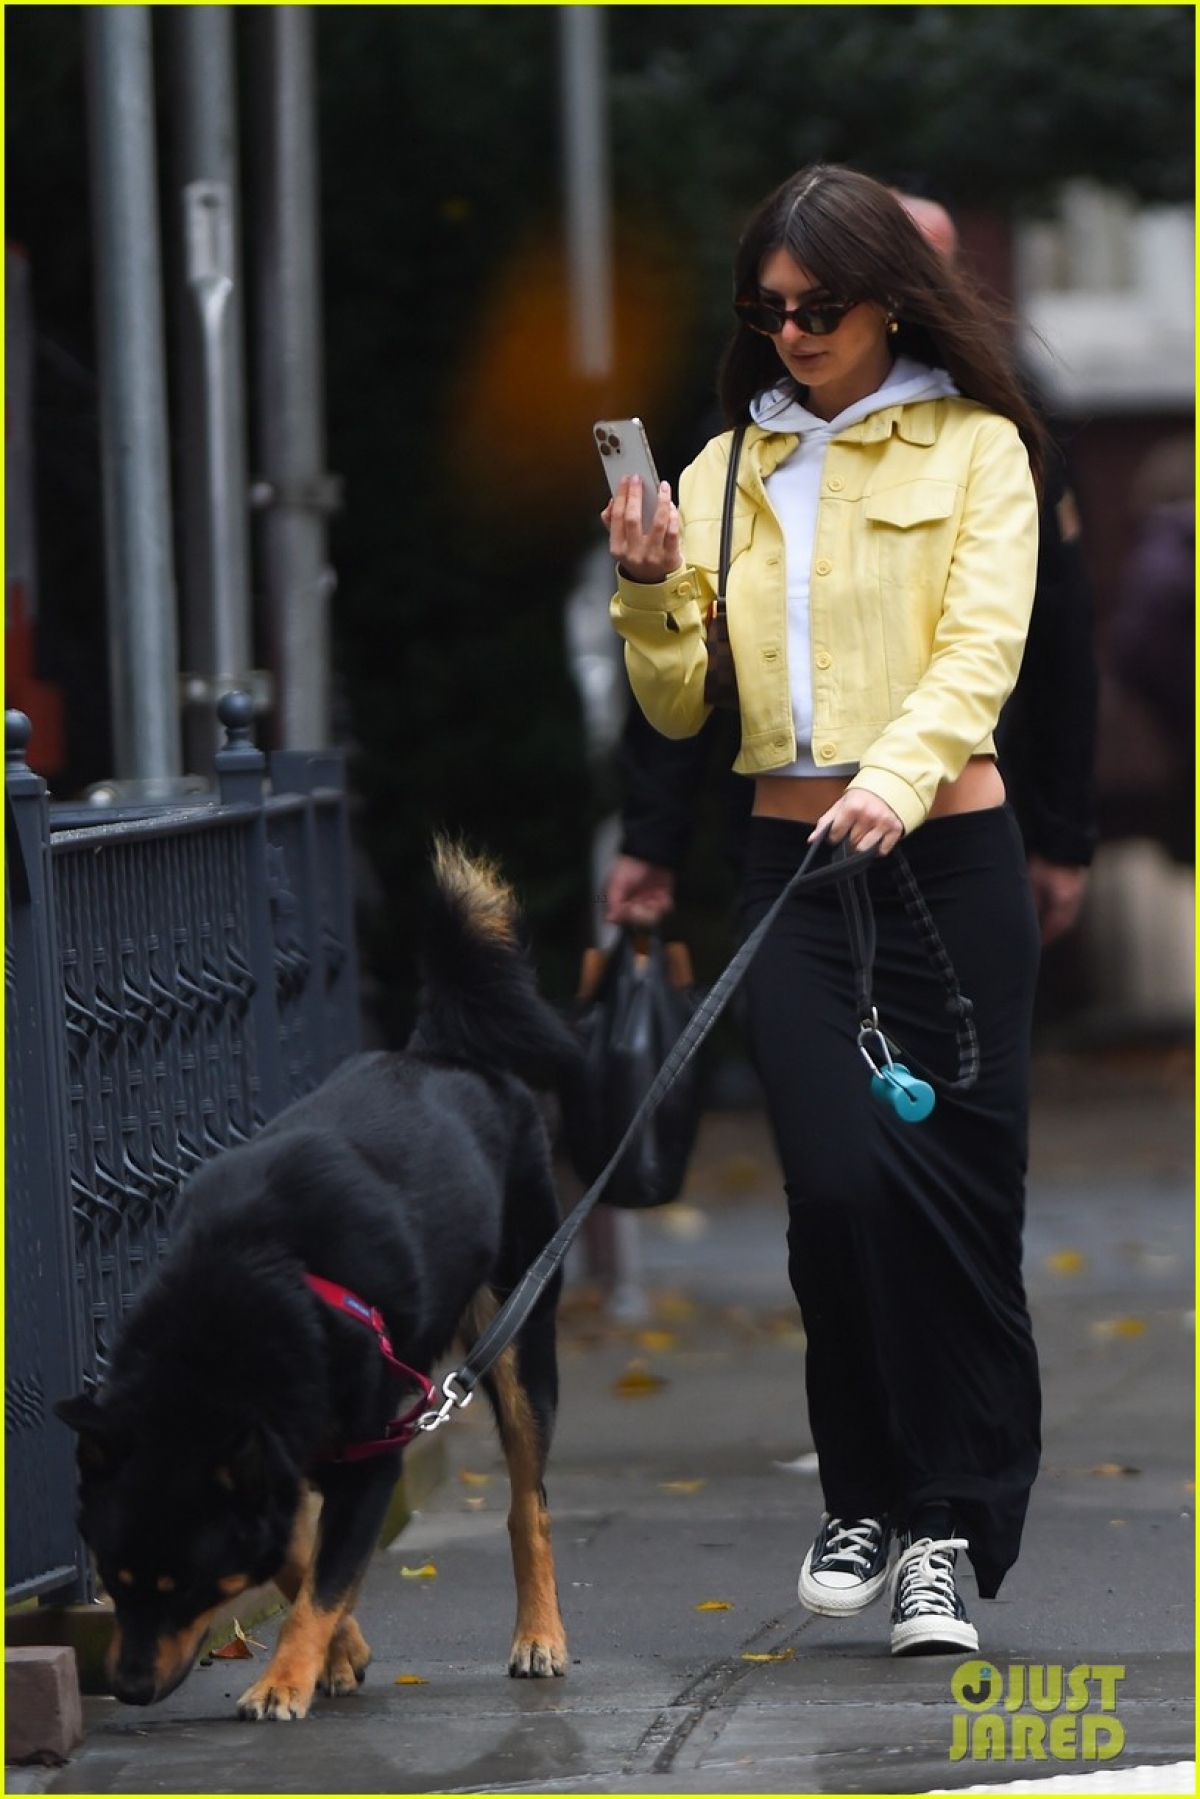 Siêu mẫu Emily Ratajkowski để mặt mộc xinh đẹp dắt thú cưng đi dạo phố - Ảnh 4.